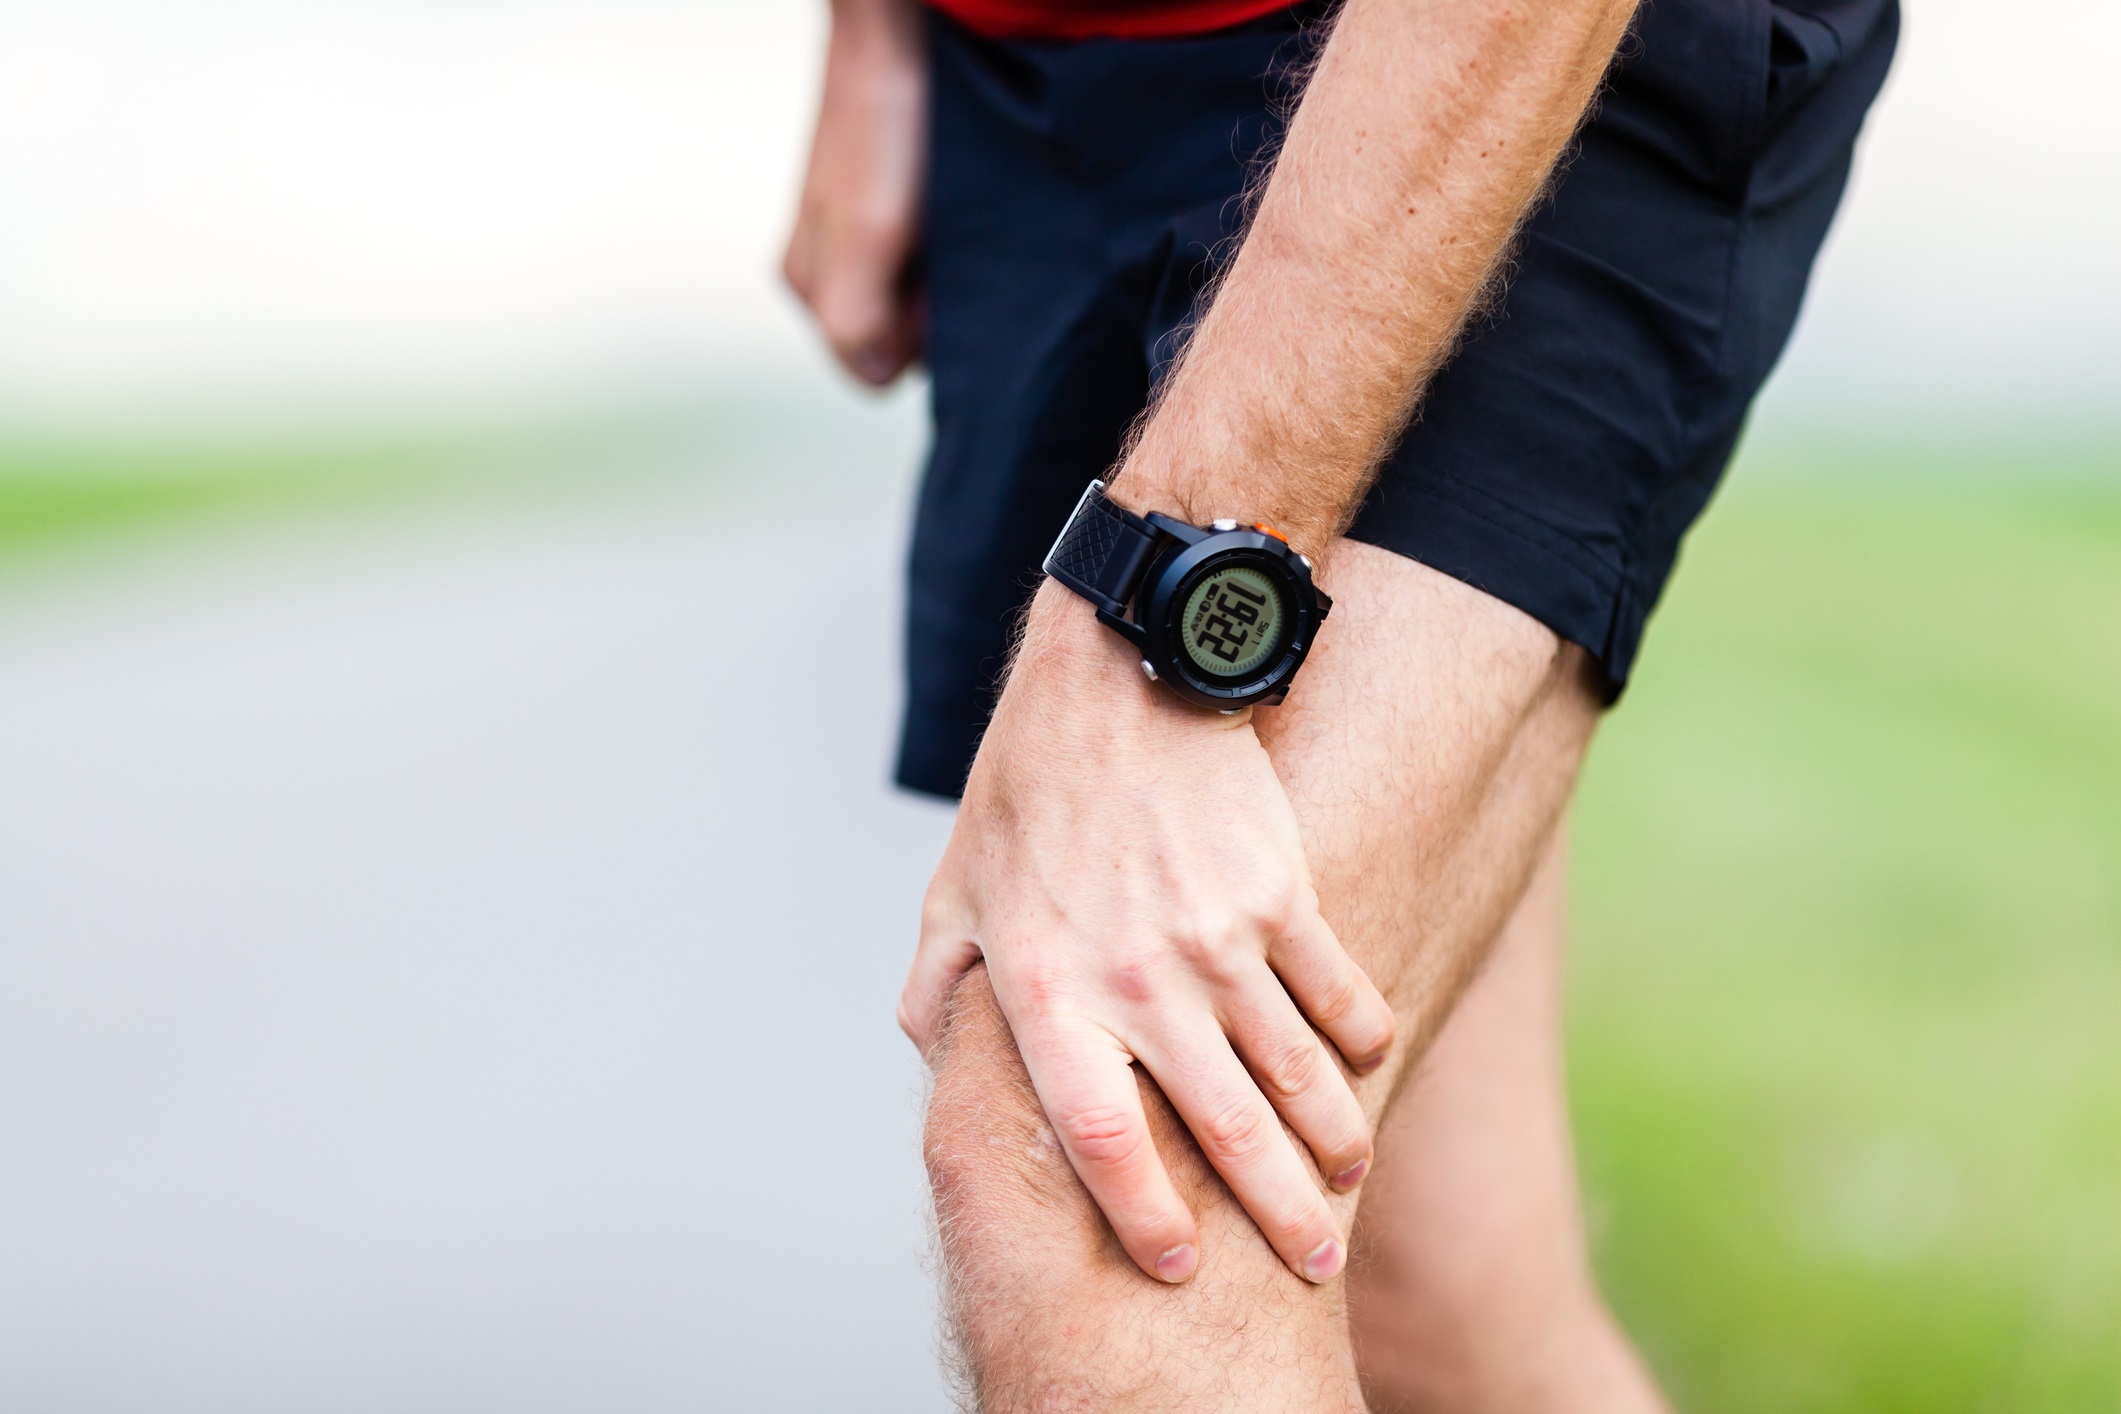 Knee pain while running